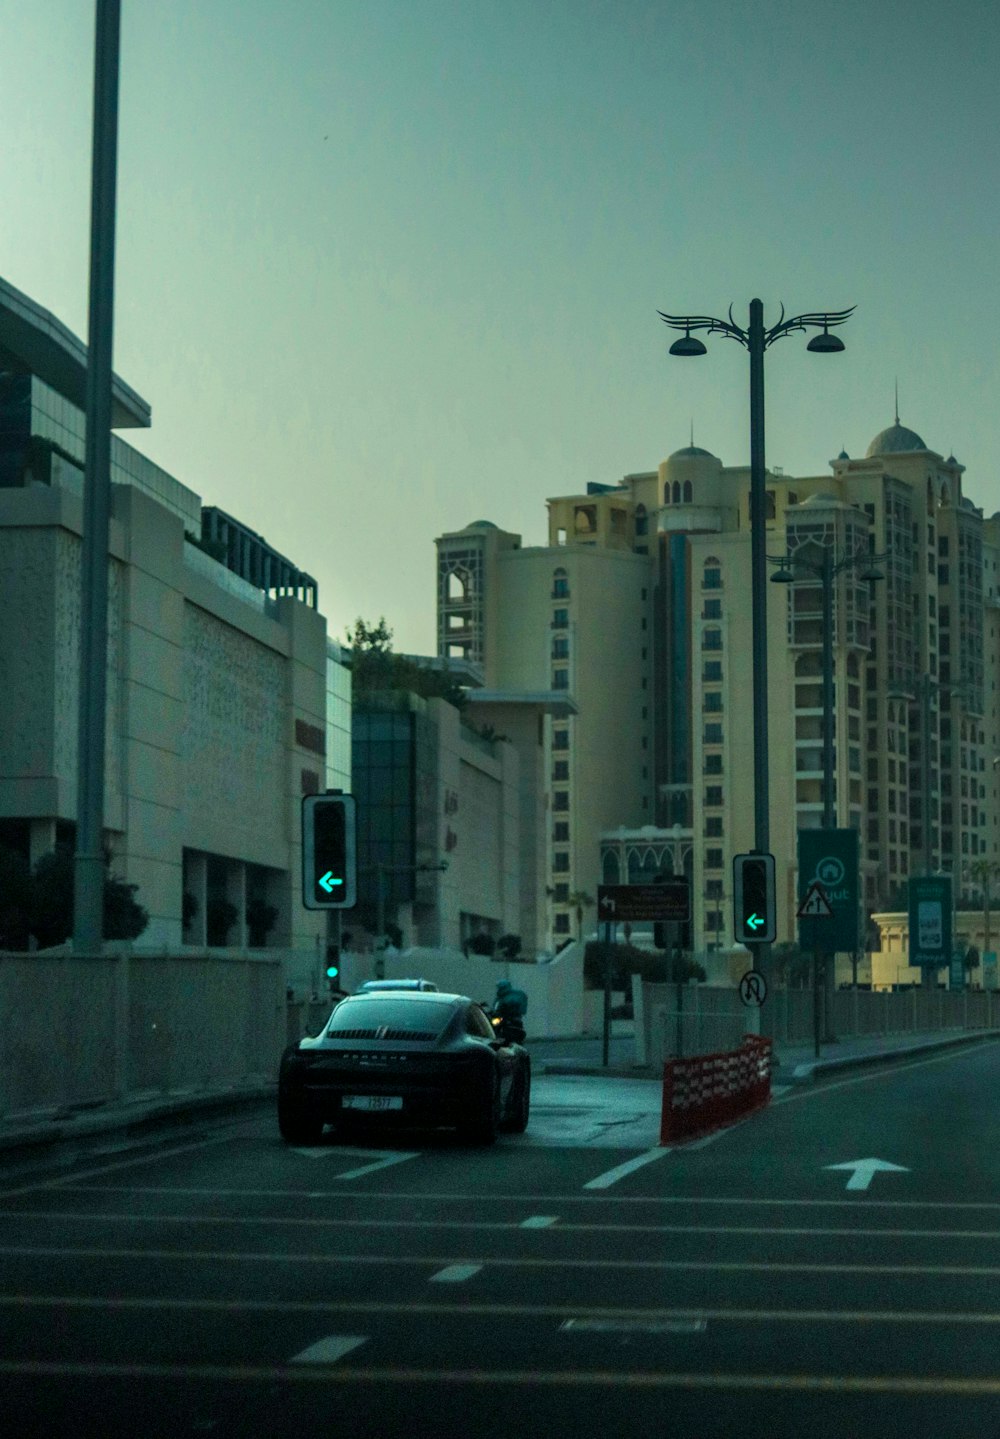 une voiture roulant dans une rue à côté de grands immeubles